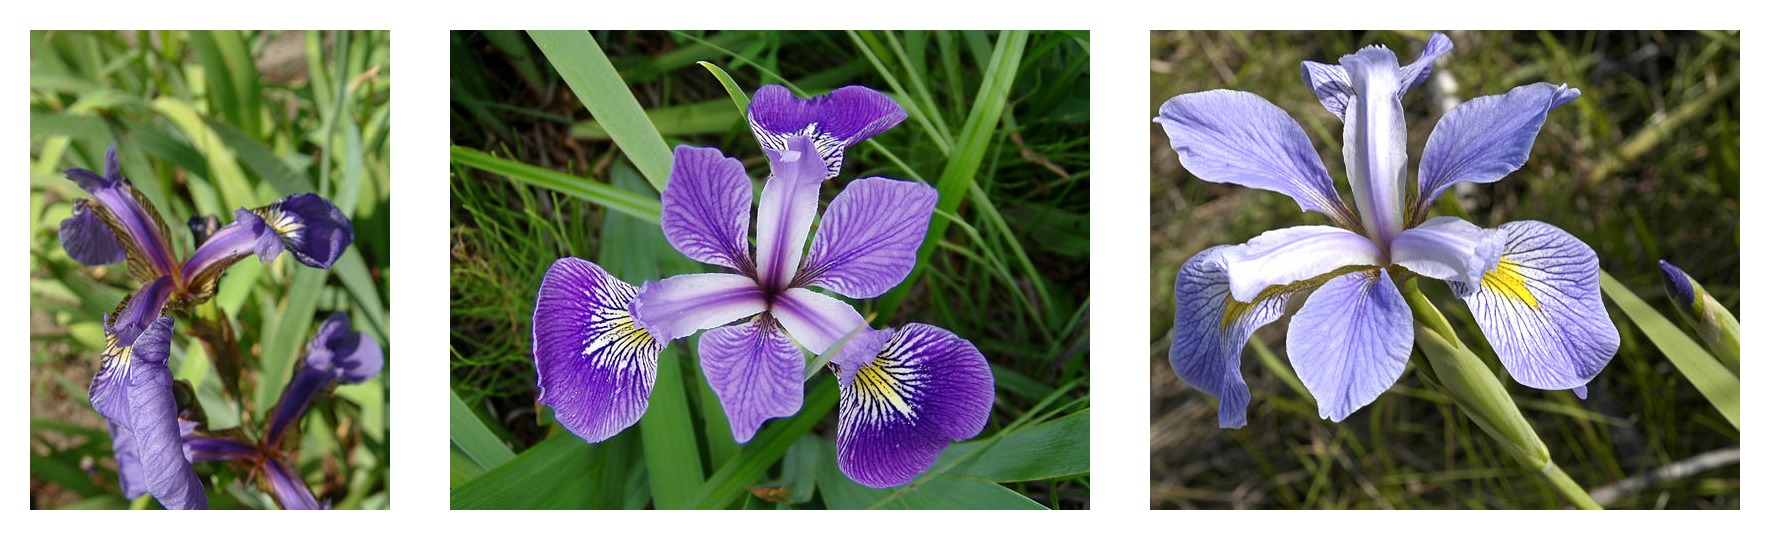 세 가지 붓꽃 종에 대한 꽃잎 기하학 비교: Iris setosa, Iris virginica 및 Iris versicolor